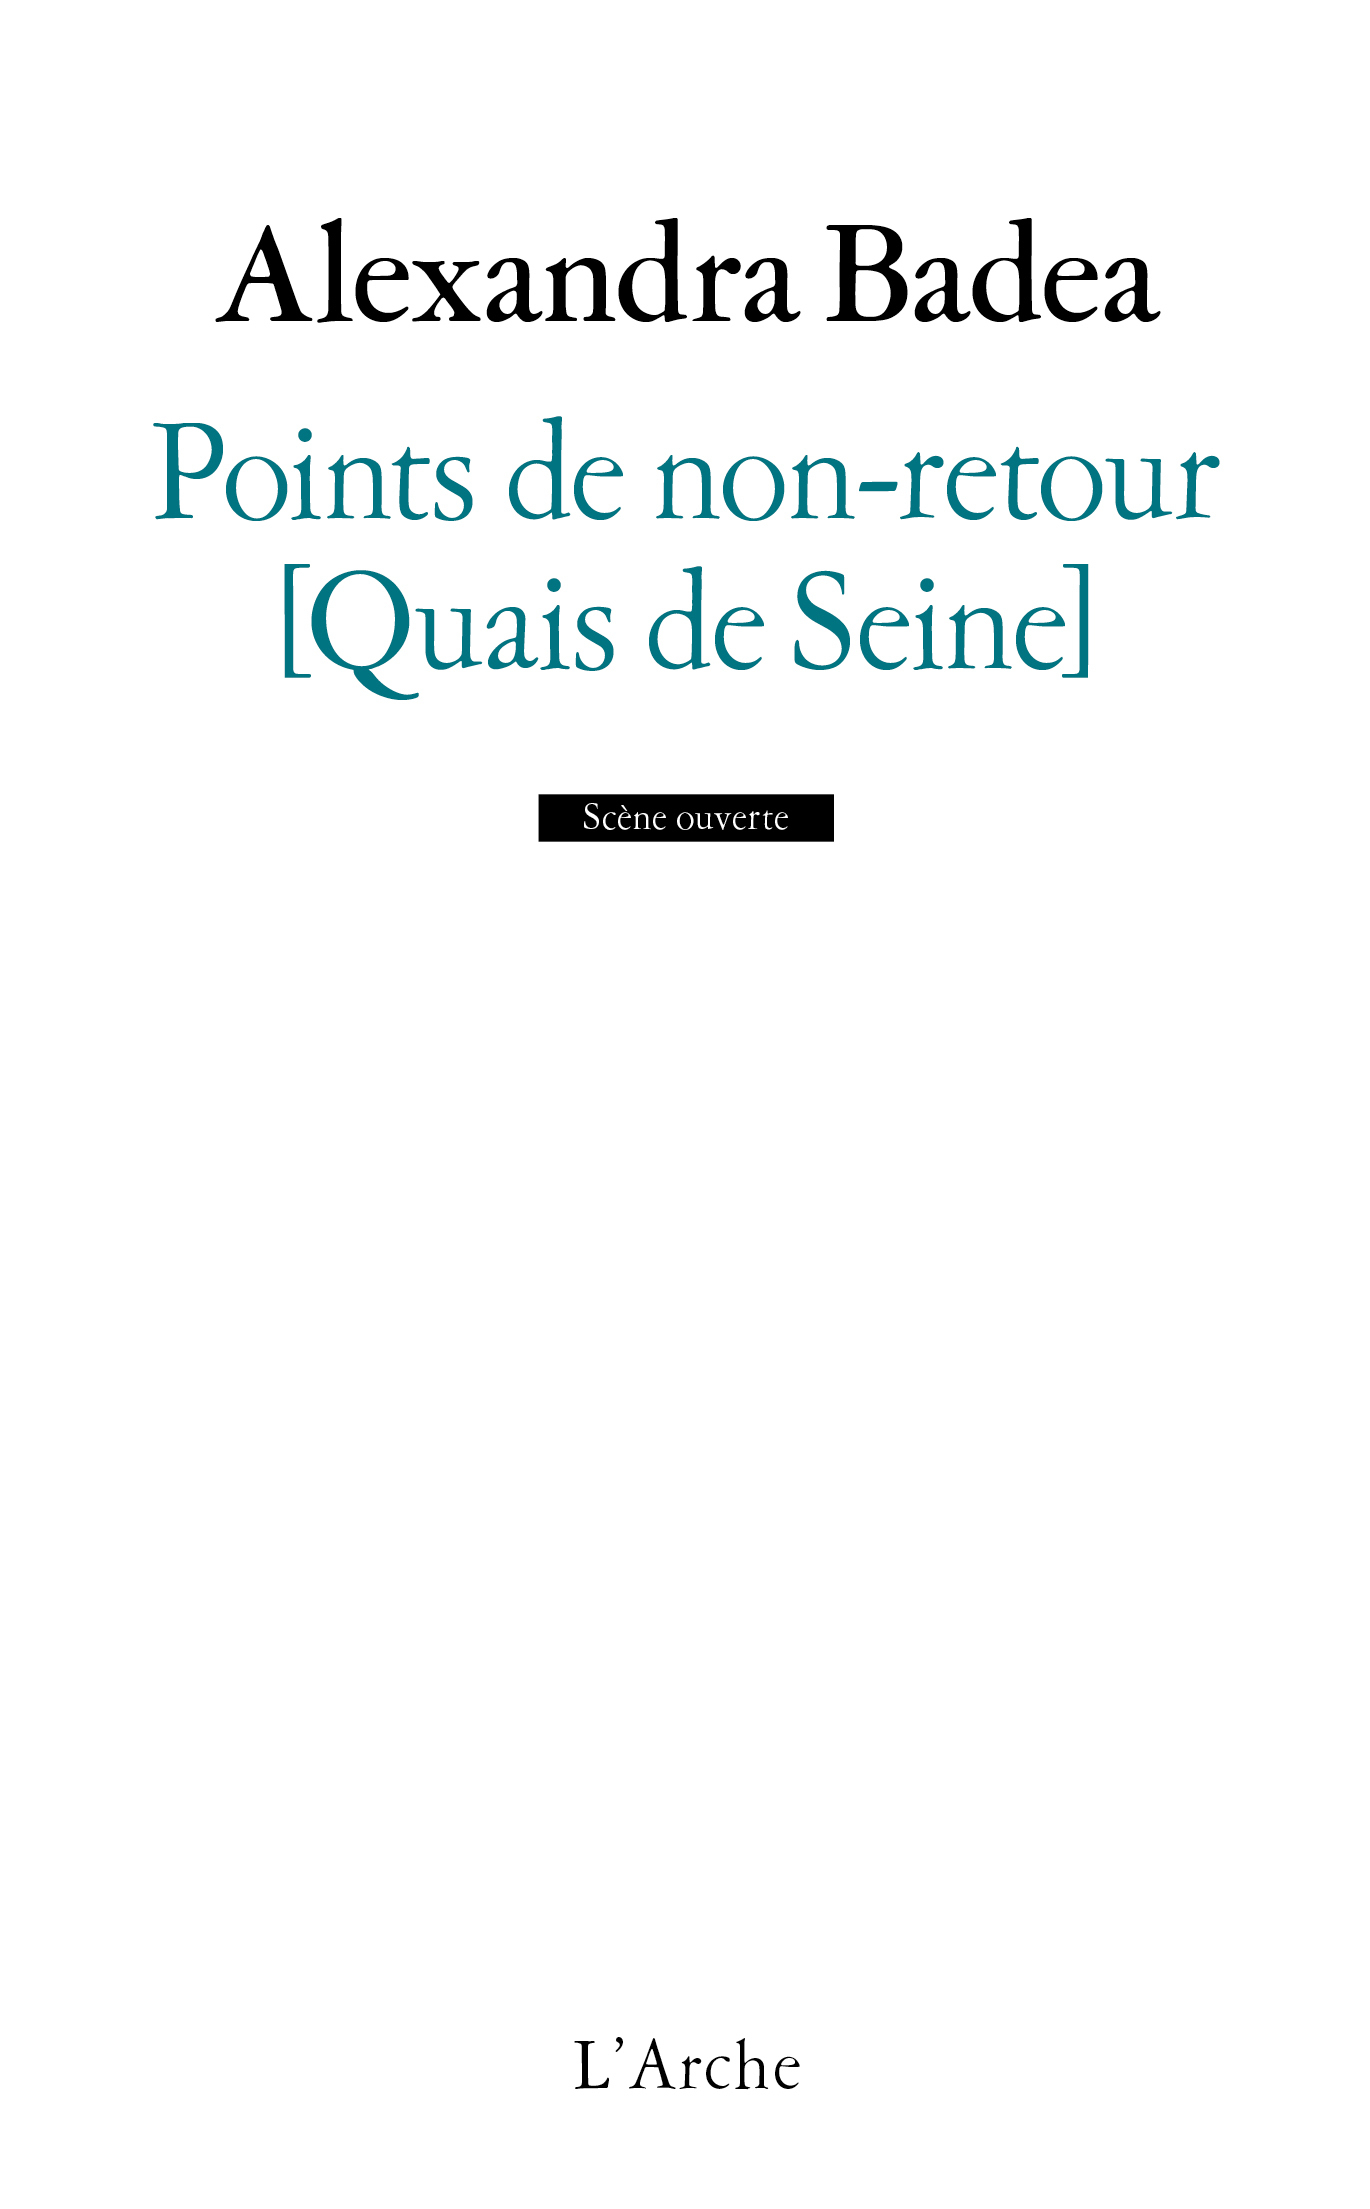 Points de non-retour [Quais de Seine] (9782851819635-front-cover)